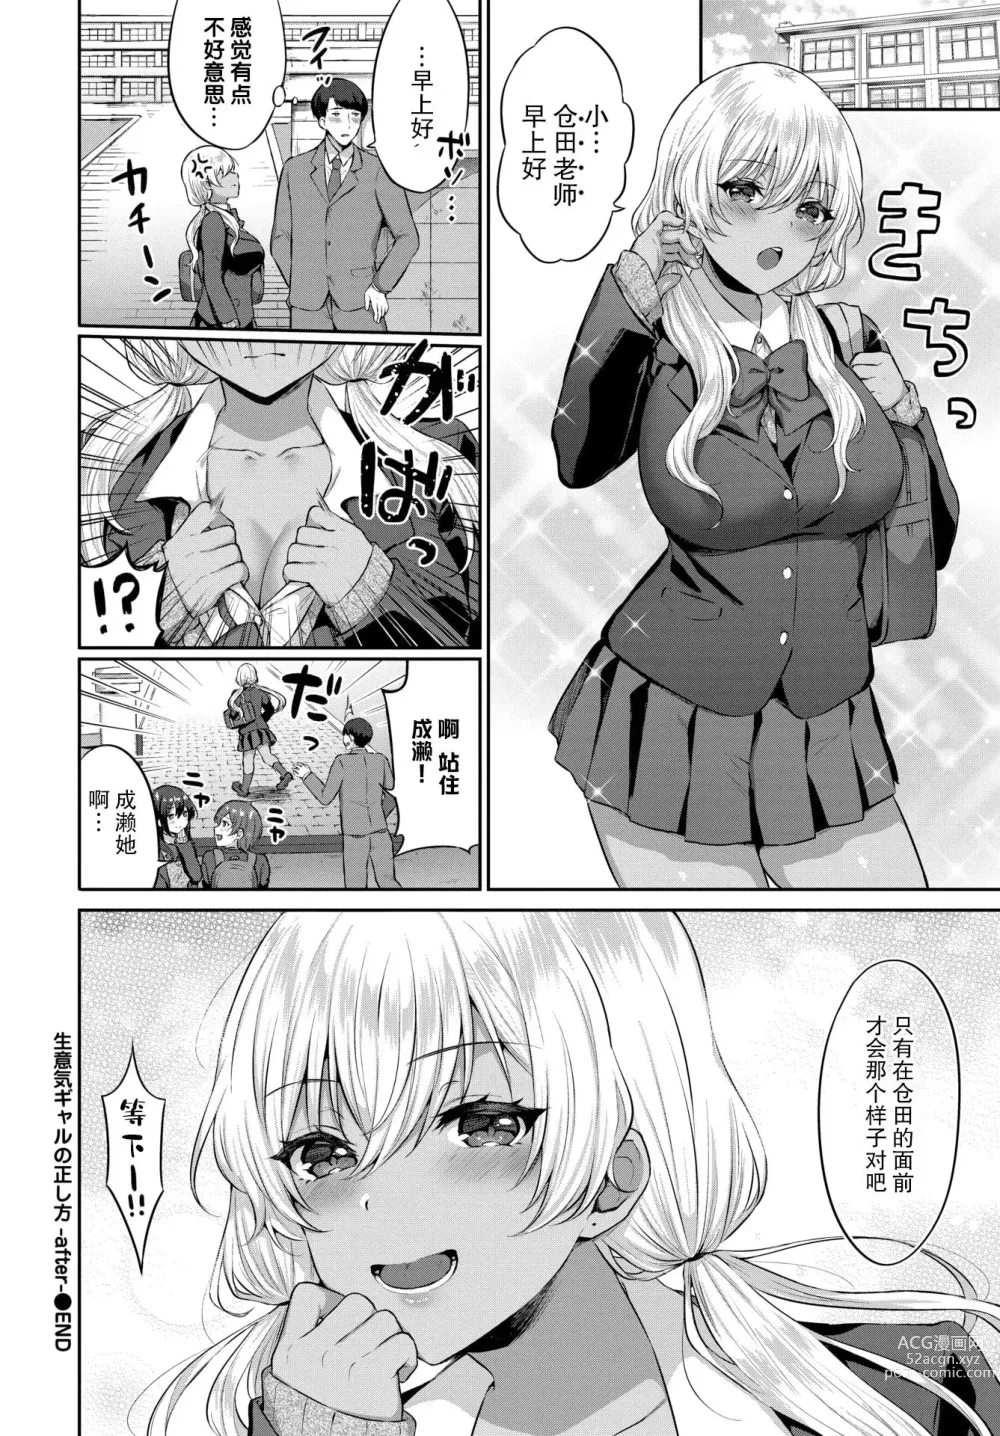 Page 193 of manga たべごろ・むすめ